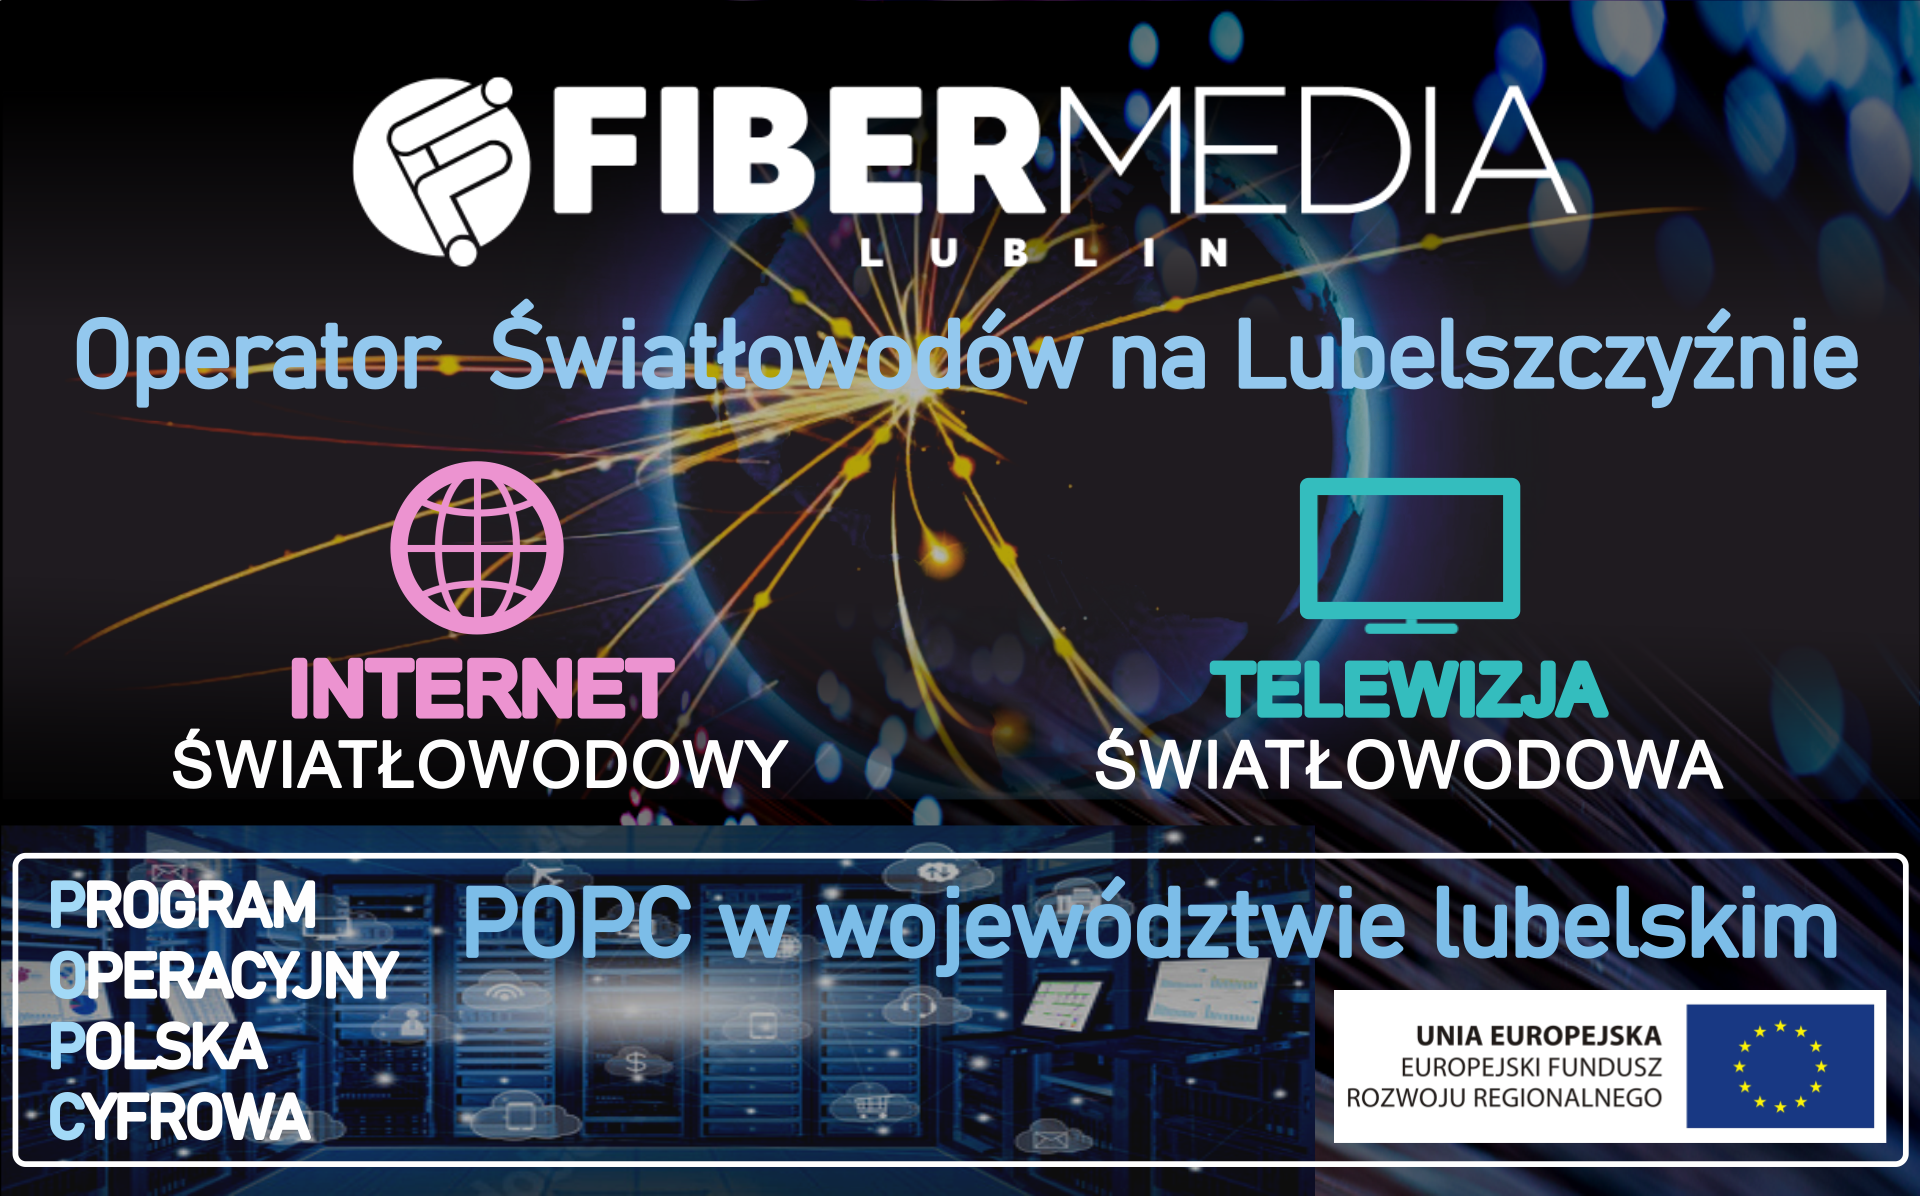 FIBER MEDIA Lublin - debiutant roku czy doświadczony operator? - Zdjęcie główne